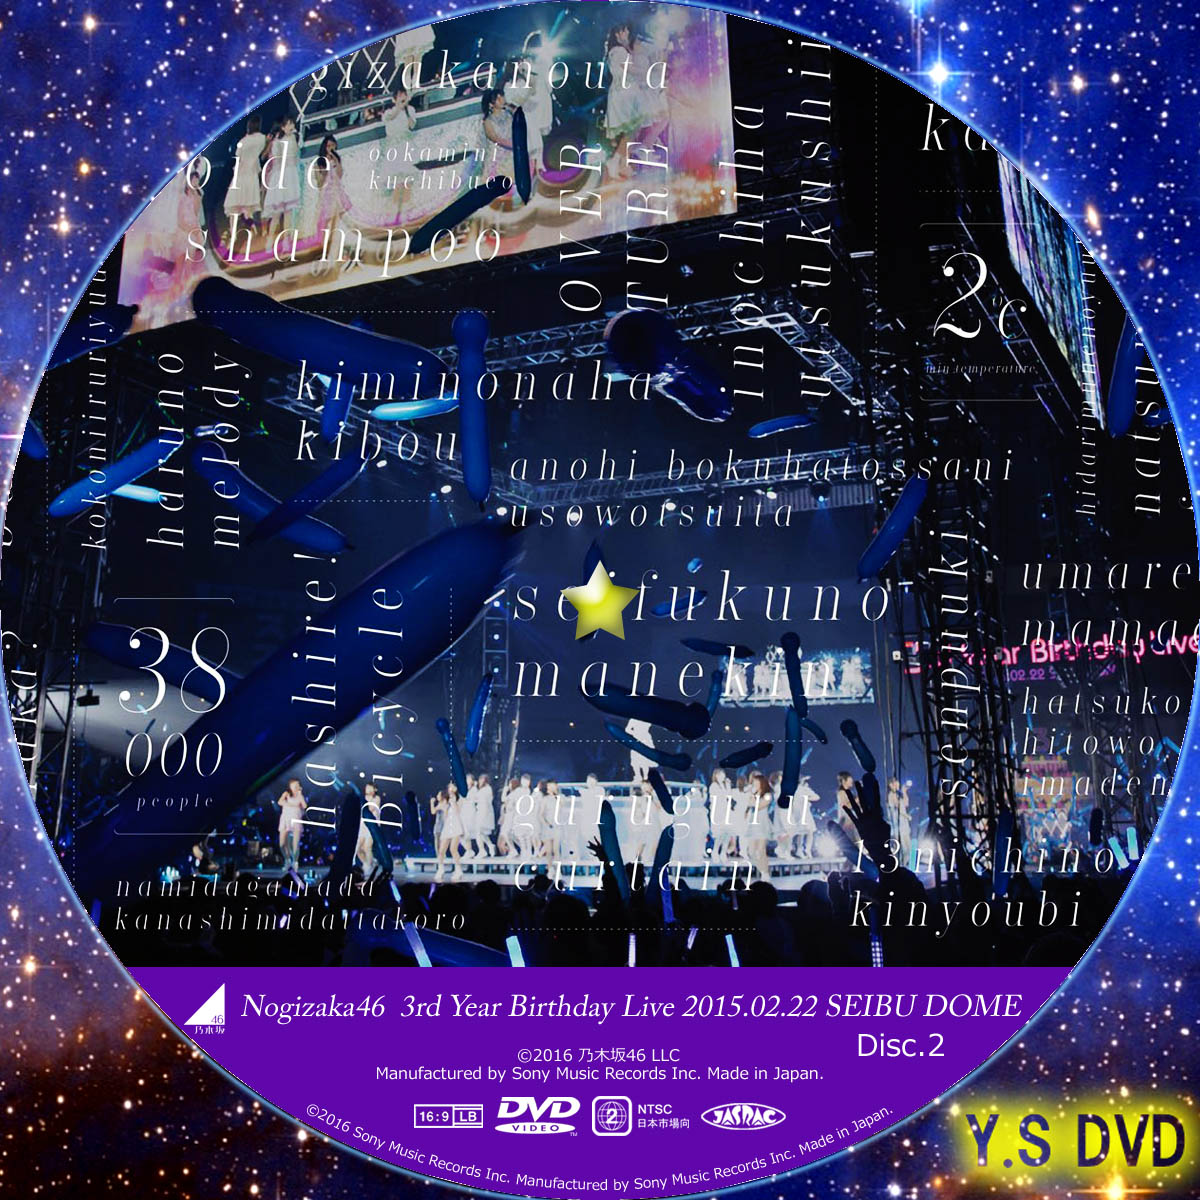 乃木坂46 3rd YEAR BIRTHDAY LIVE 2015.2.22 SEIBU DOME (DVD&BD版 